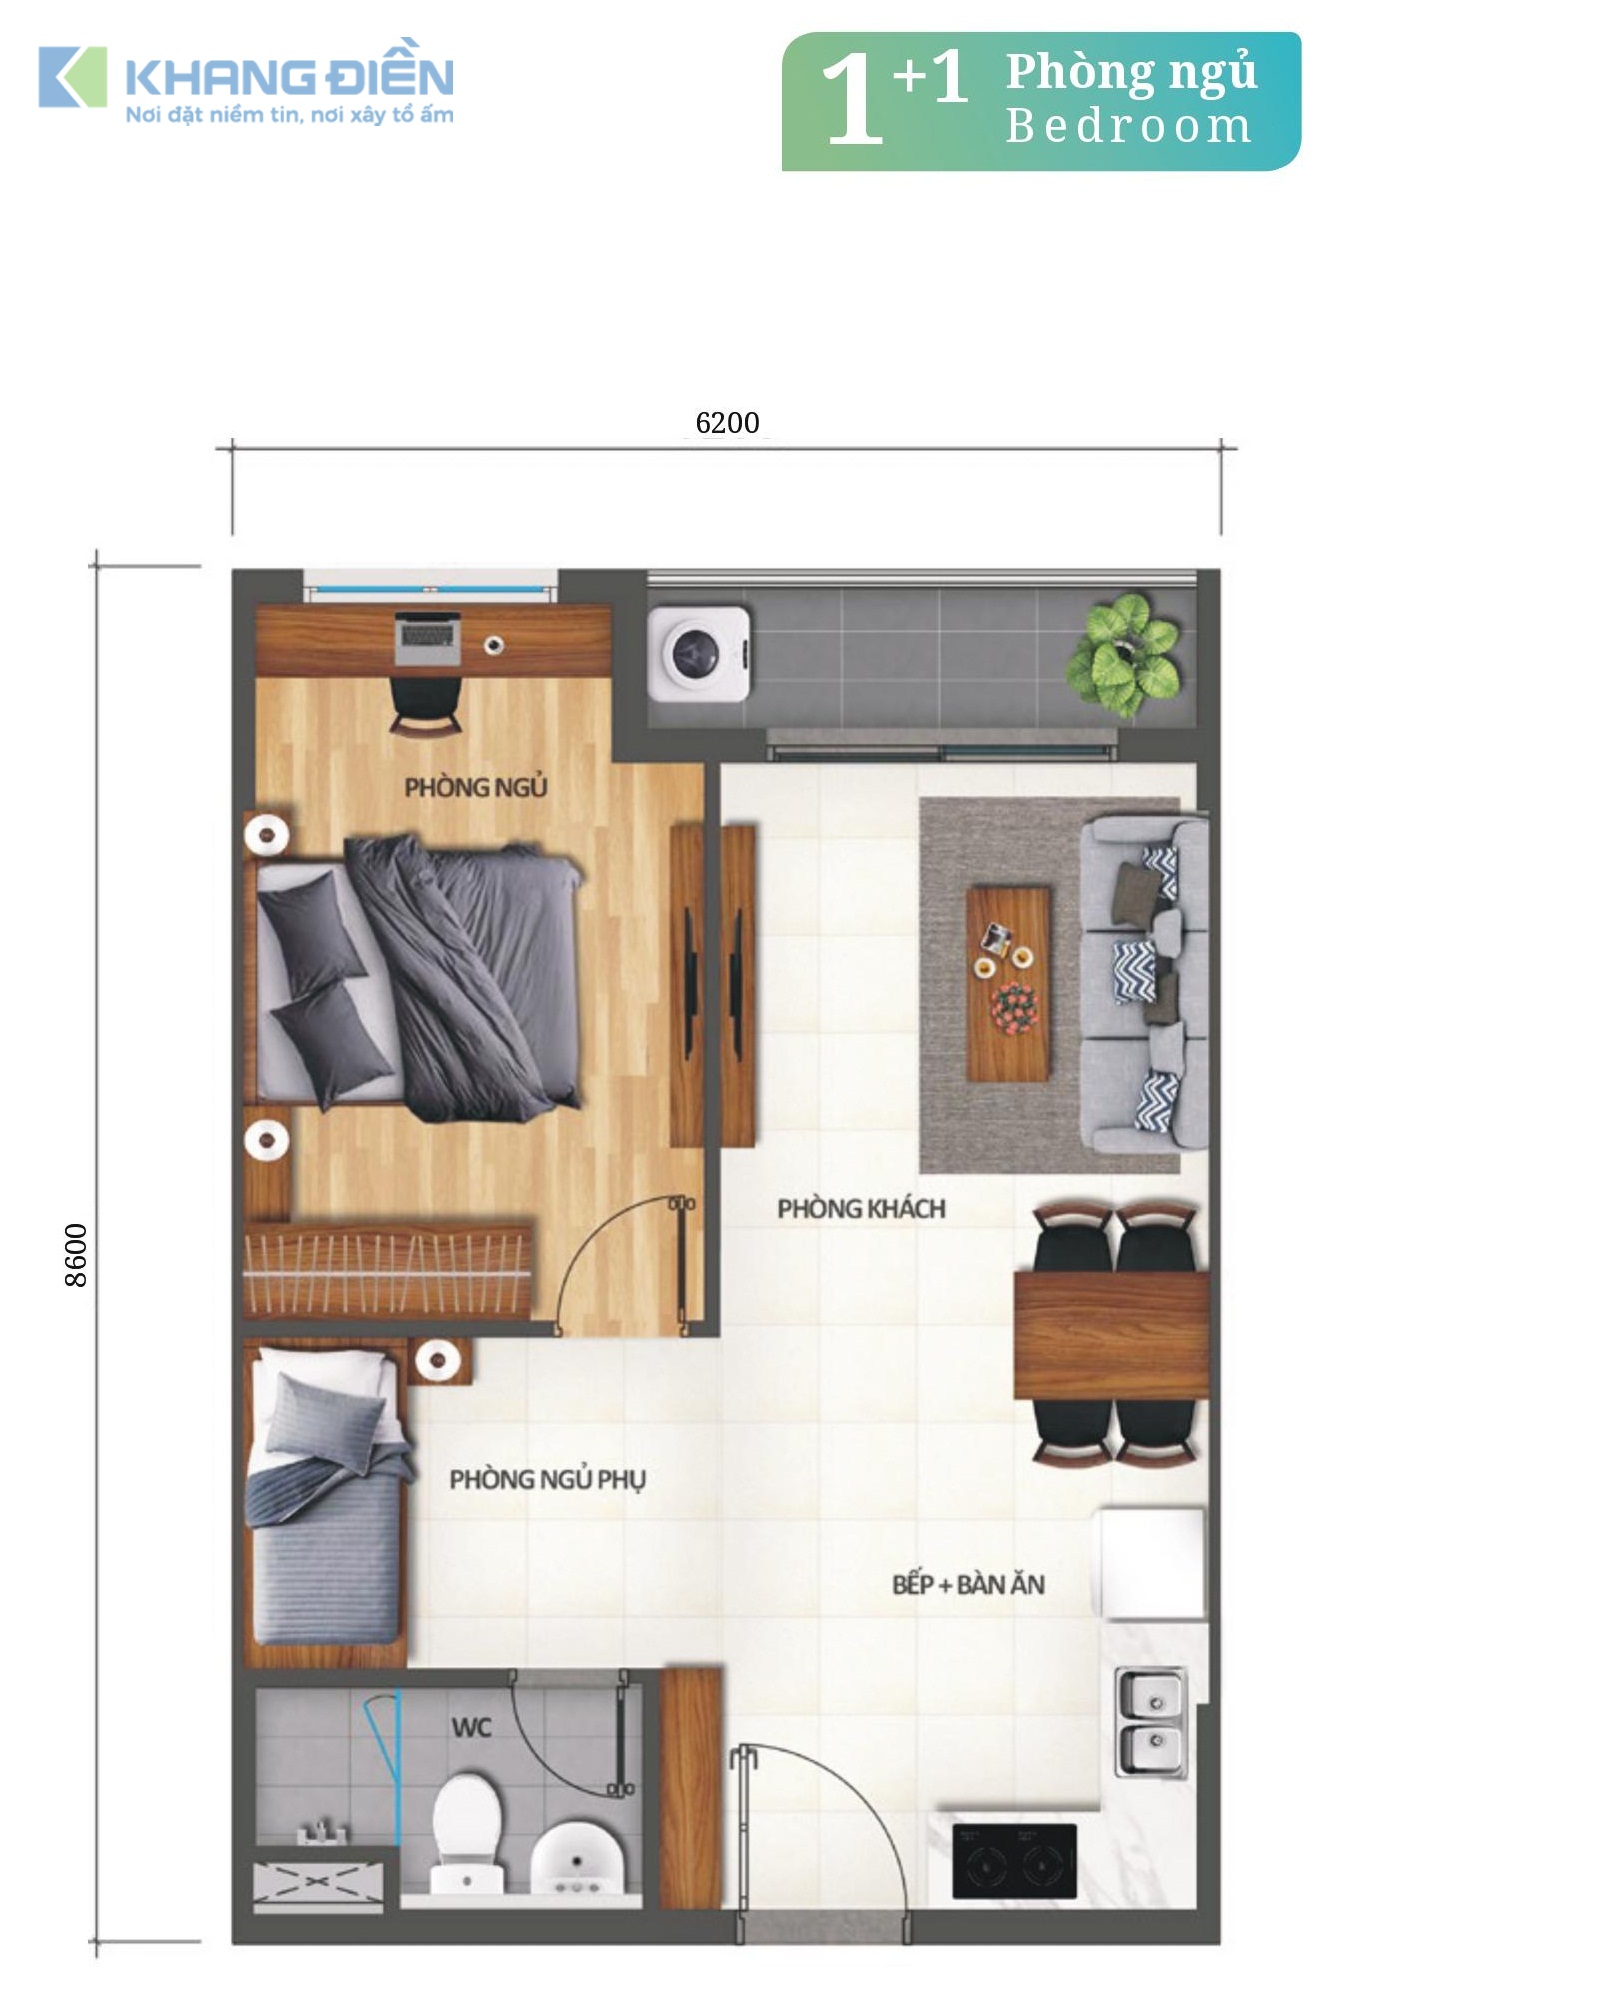 Layout thiết kế căn hộ 1+1 Phòng ngủ tại dự án Khang Điền Bình Tân - Khang Điền HCM